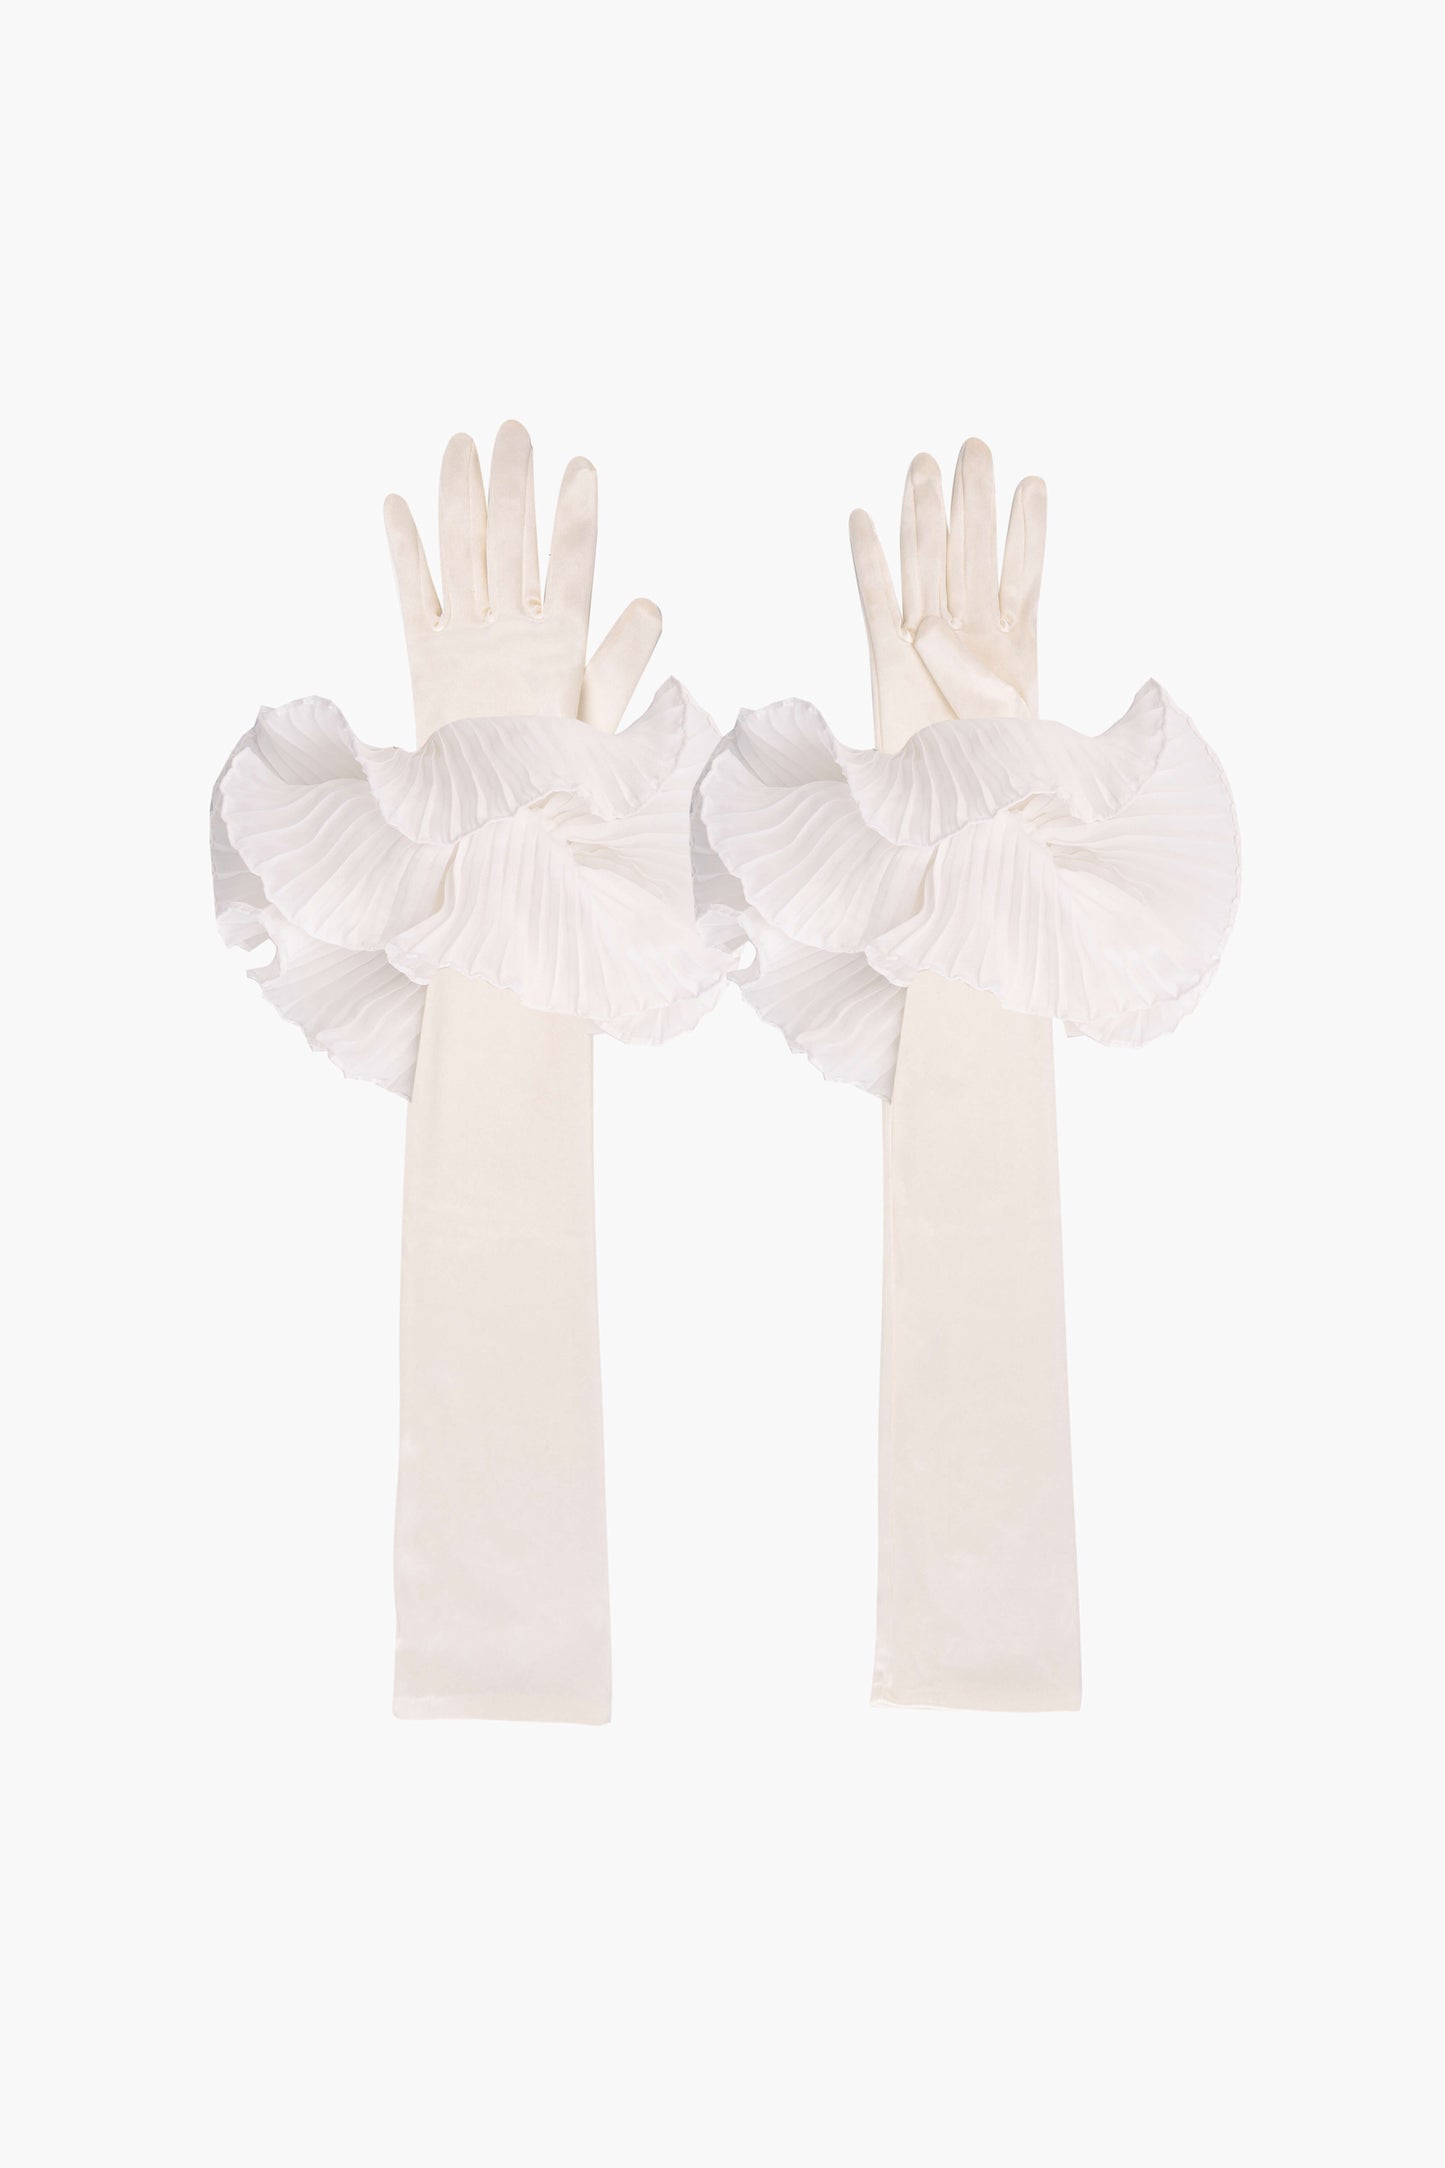 Zephyr Ruffle Gloves in White